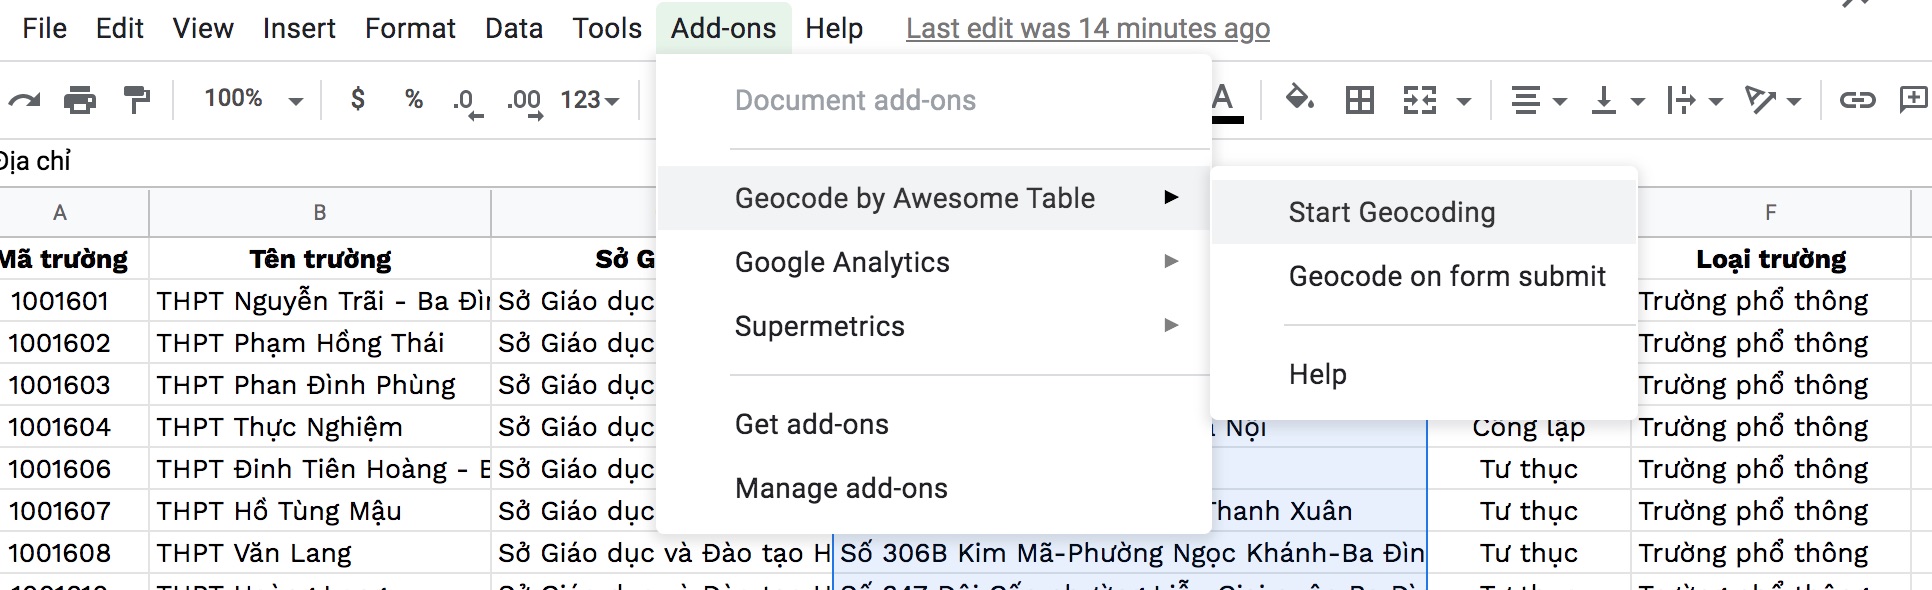 Hình 6: Sau khi cài xong, vào Add-Ons trên menu, chọn Geocode by Awesome Table, chọn Start Geocoding